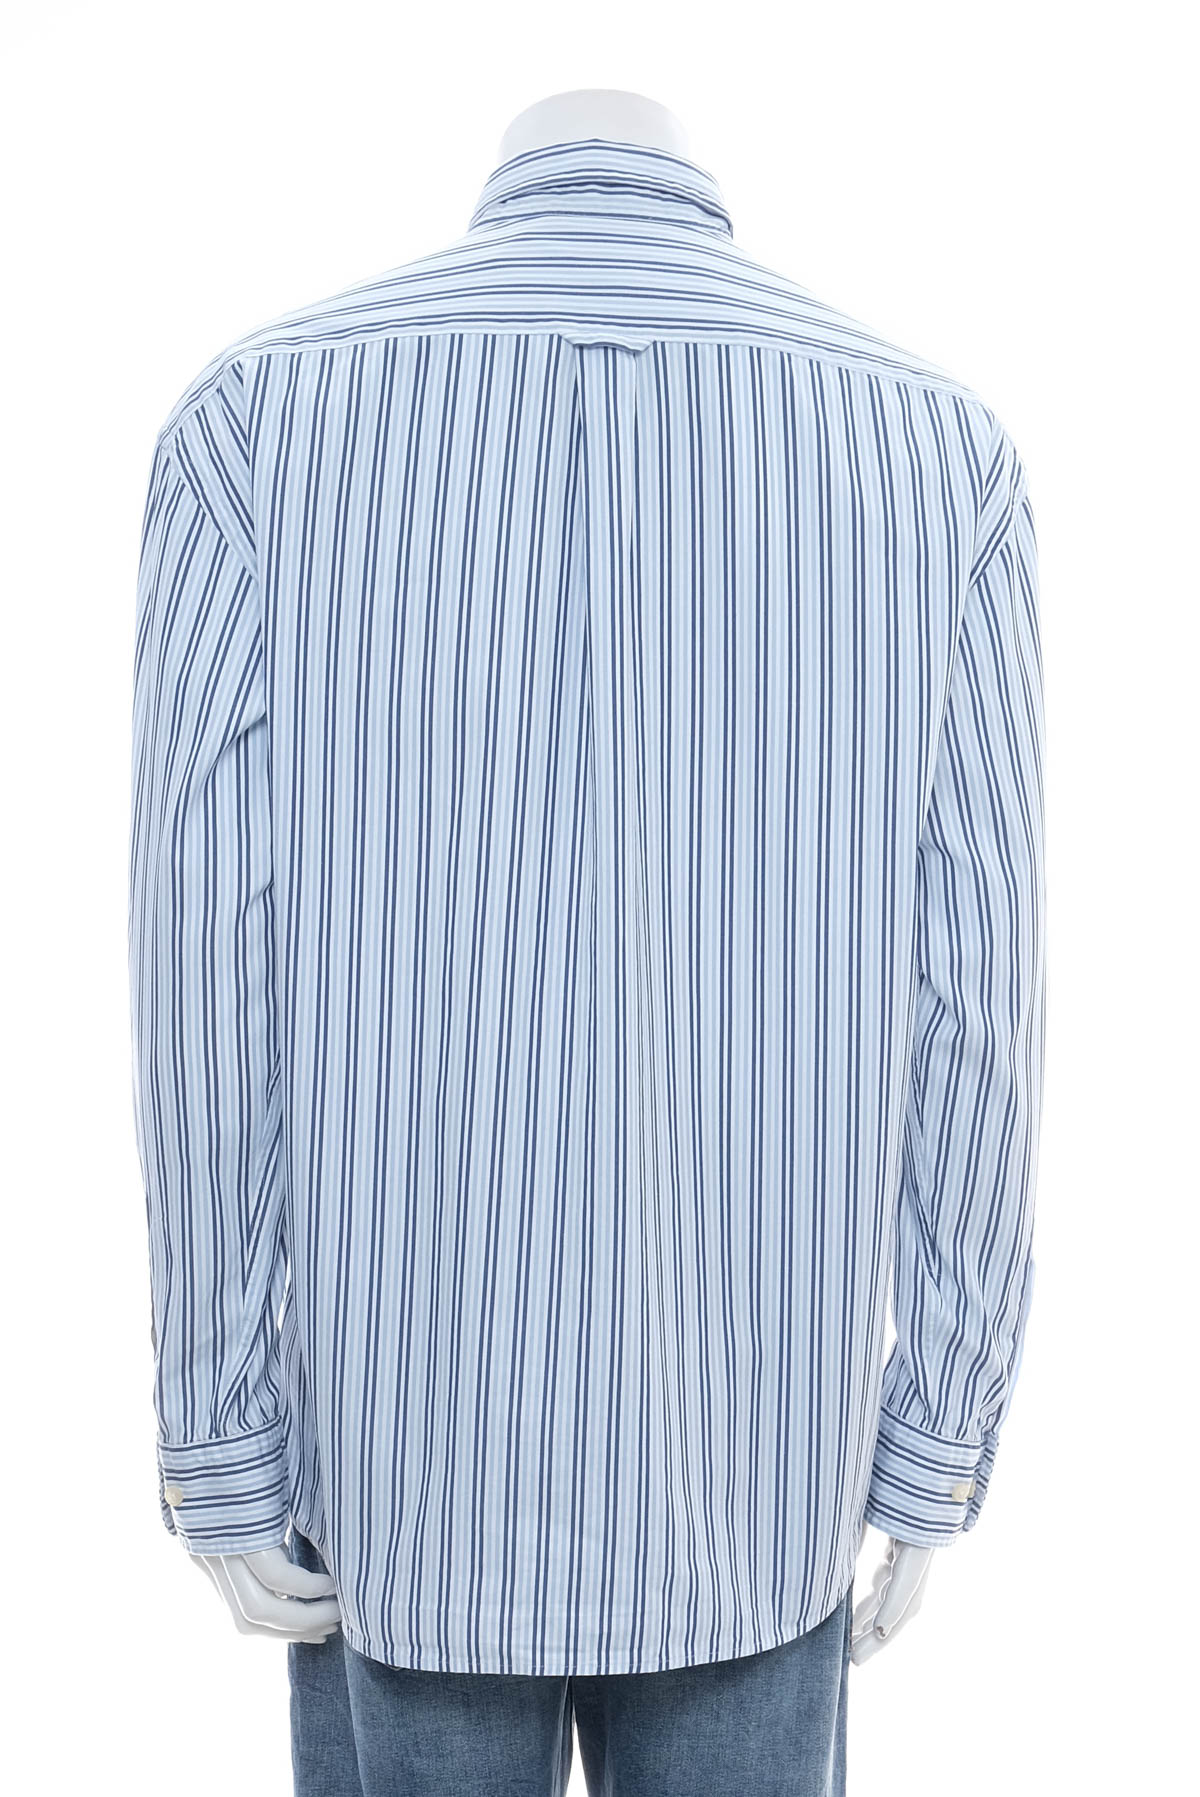 Ανδρικό πουκάμισο - Gant - 1